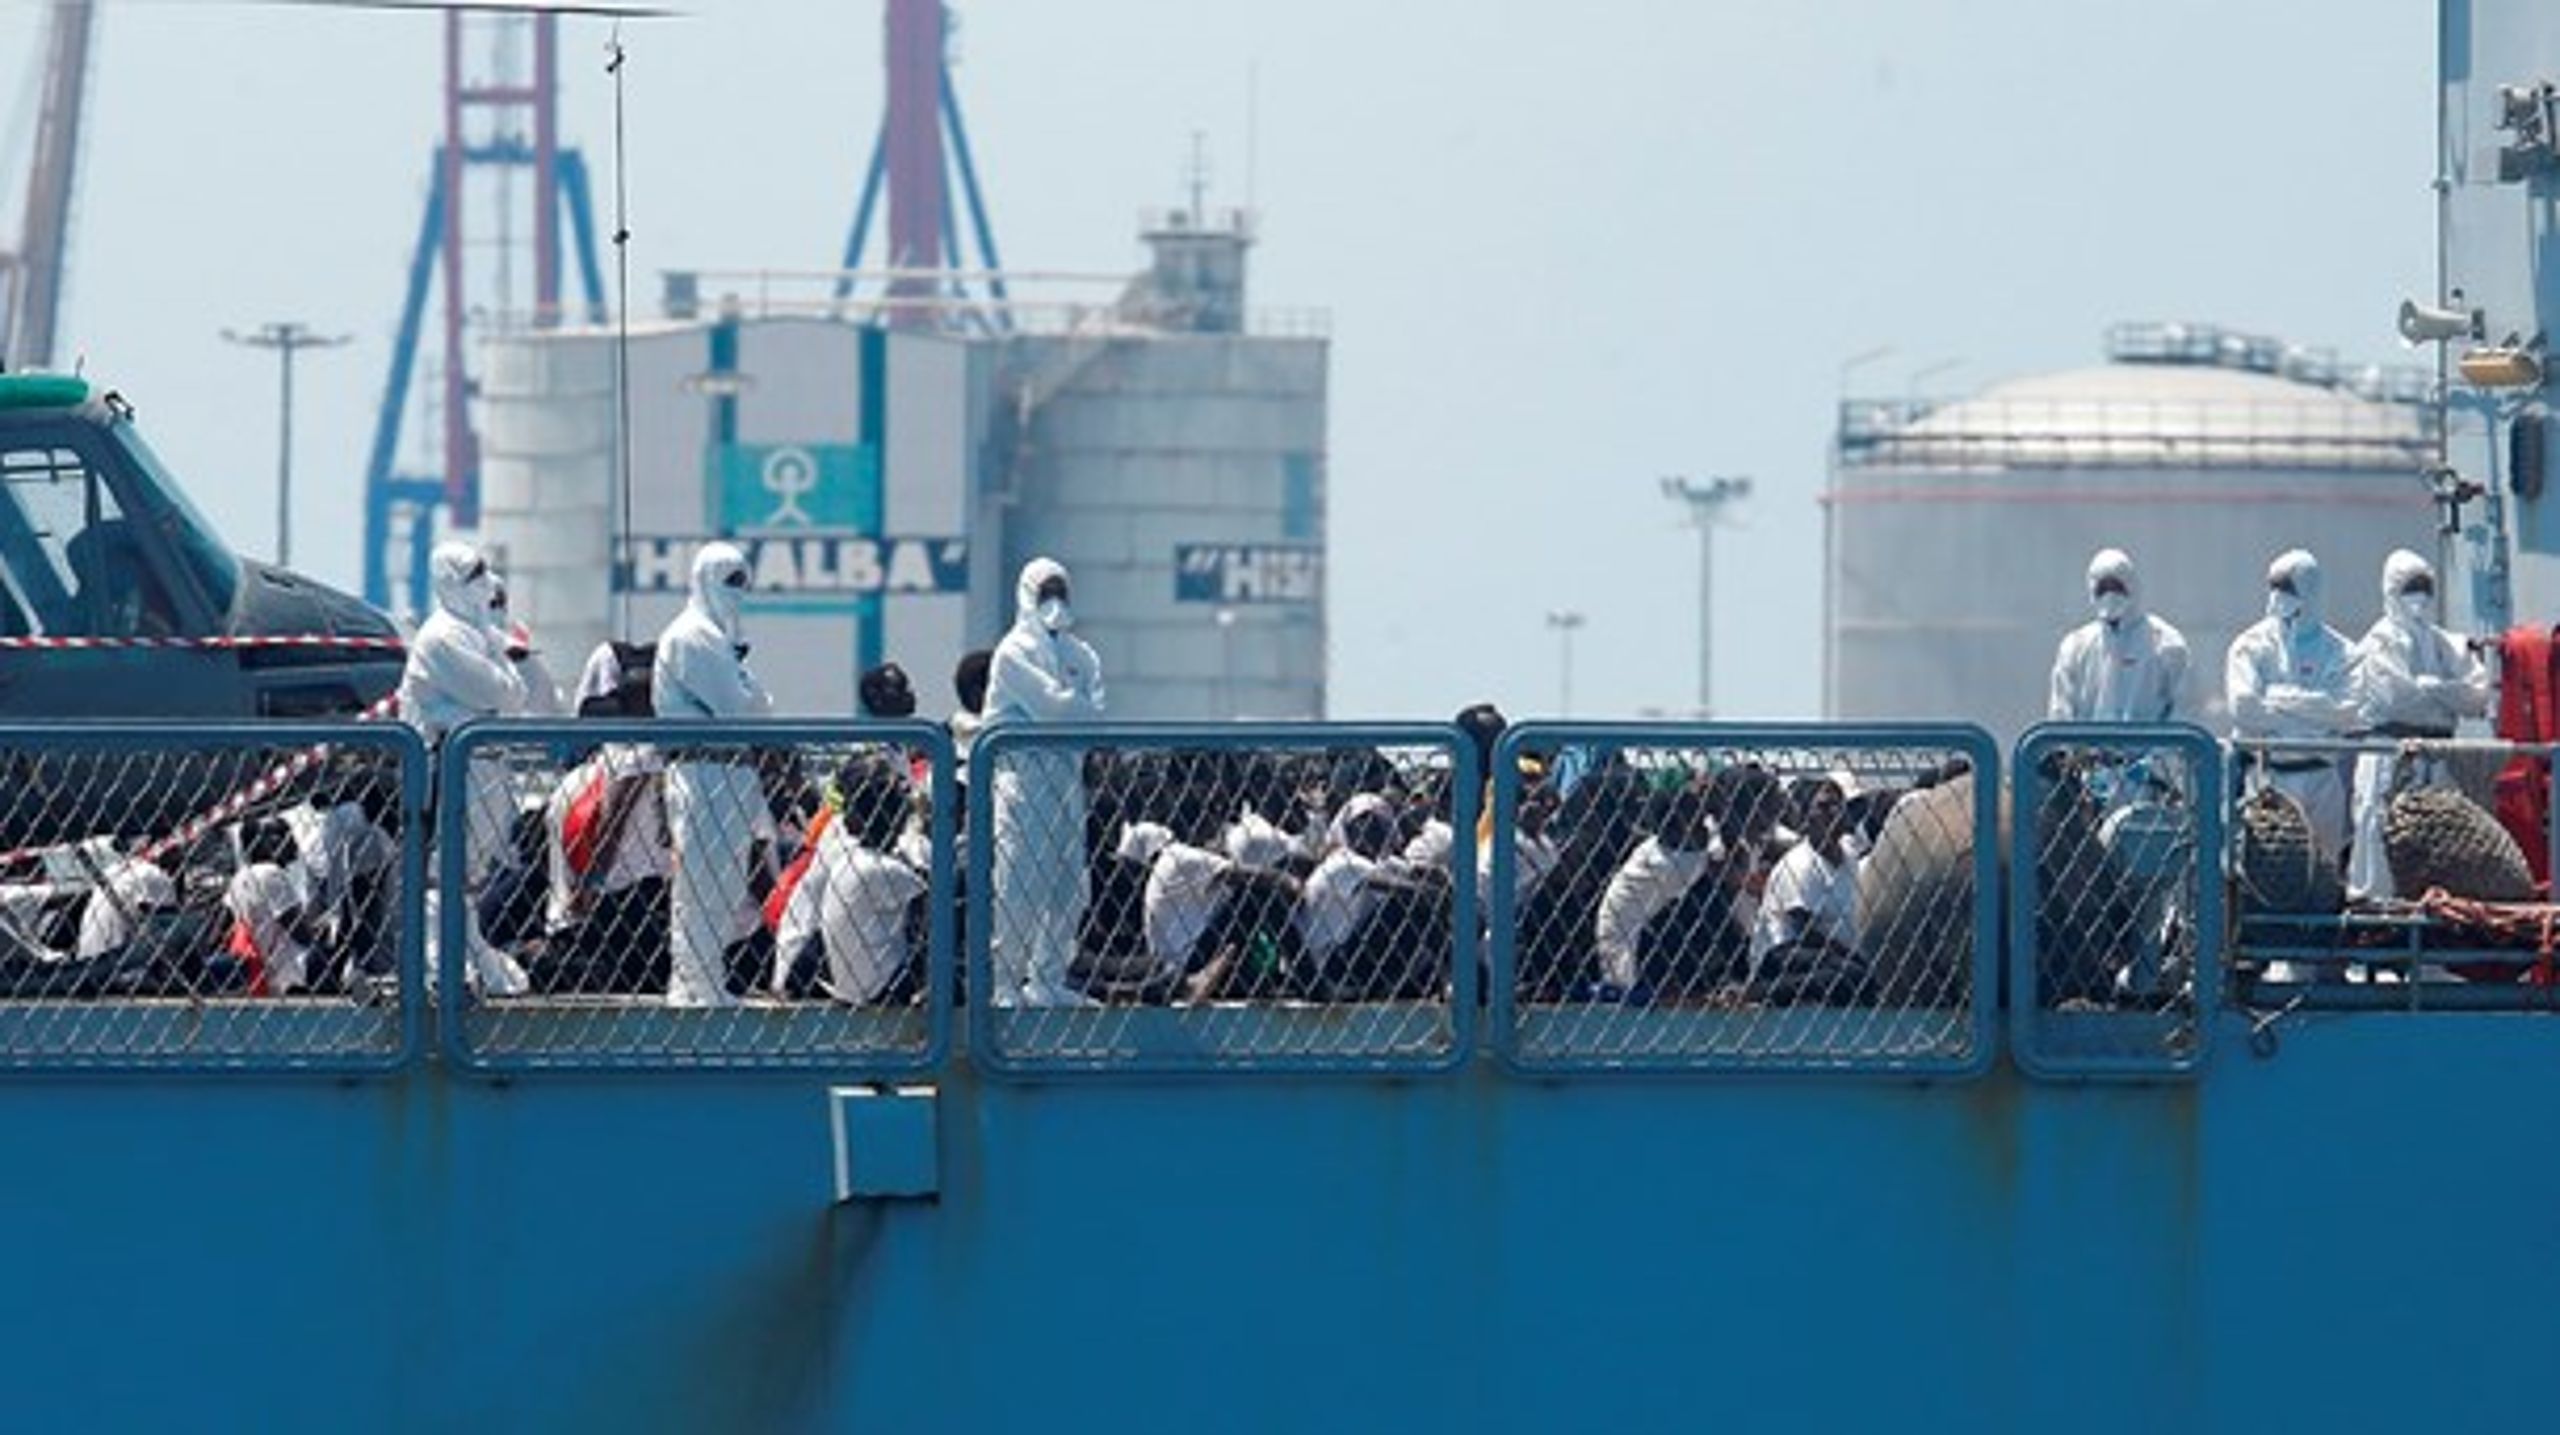 Et italiensk skib med nogle af de migranter, der hvert år ankommer til EU.